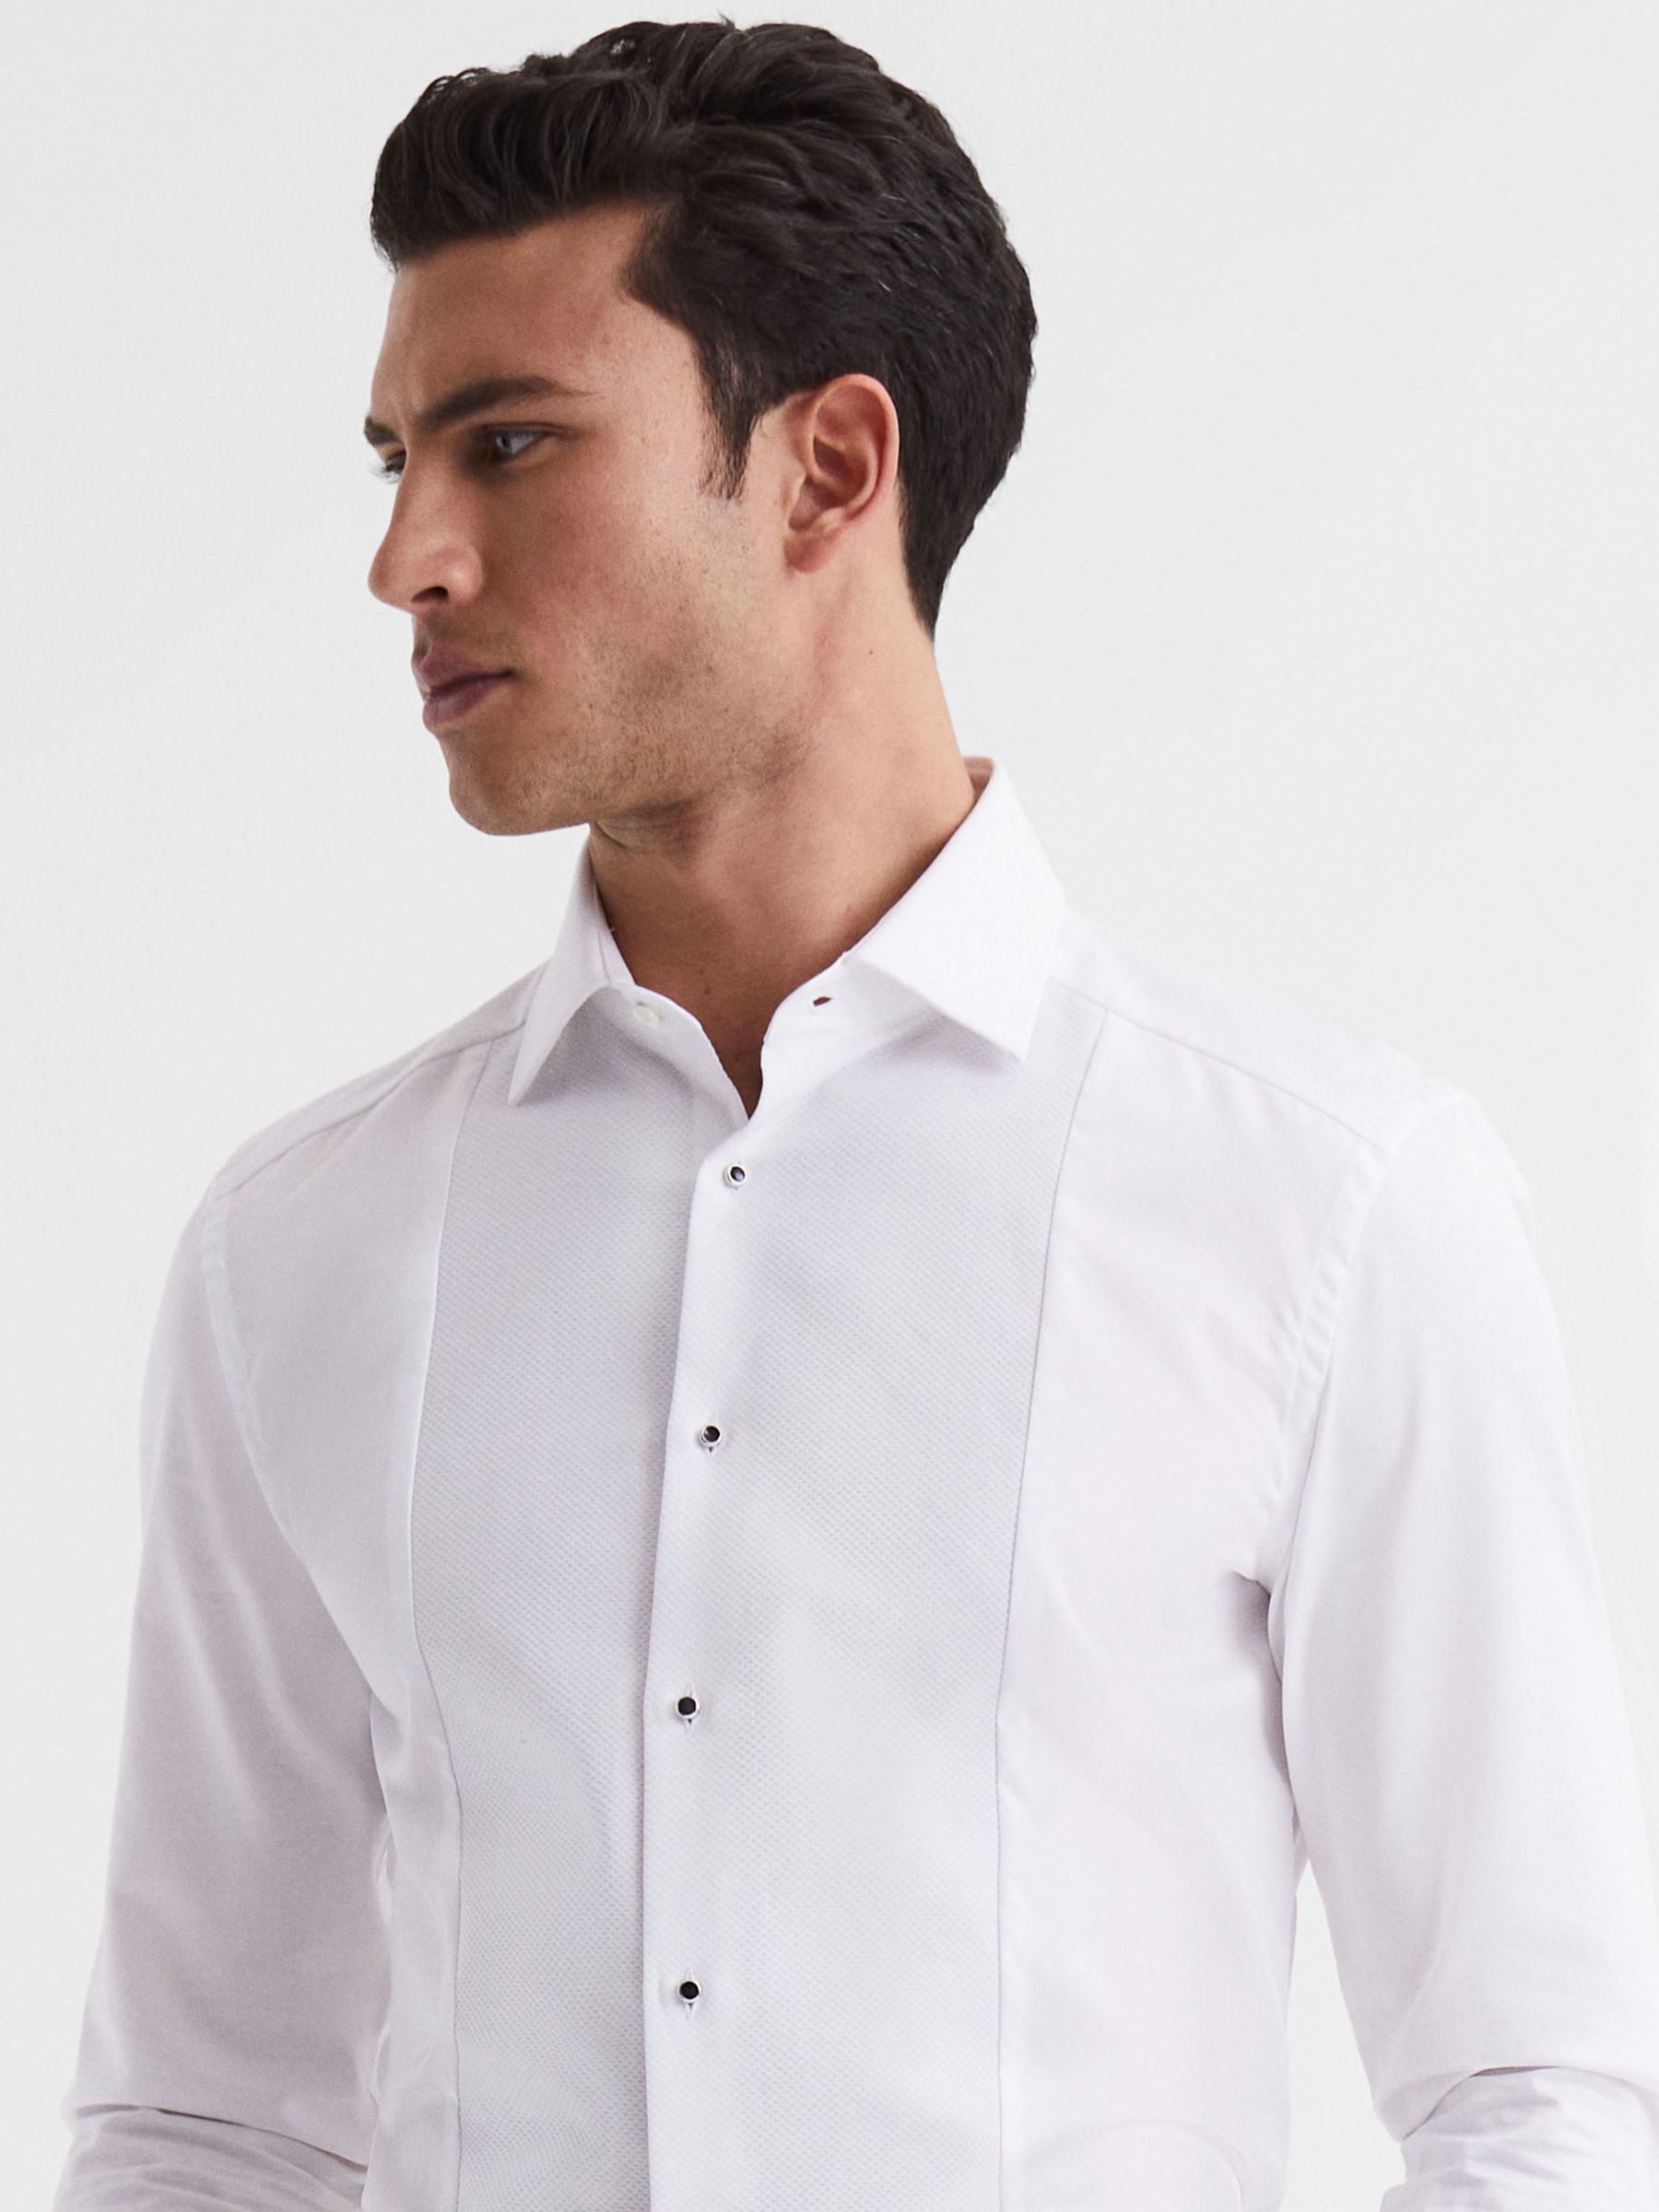 Reiss Marcel Slim Fit Cotton Dinner Shirt, White, XS